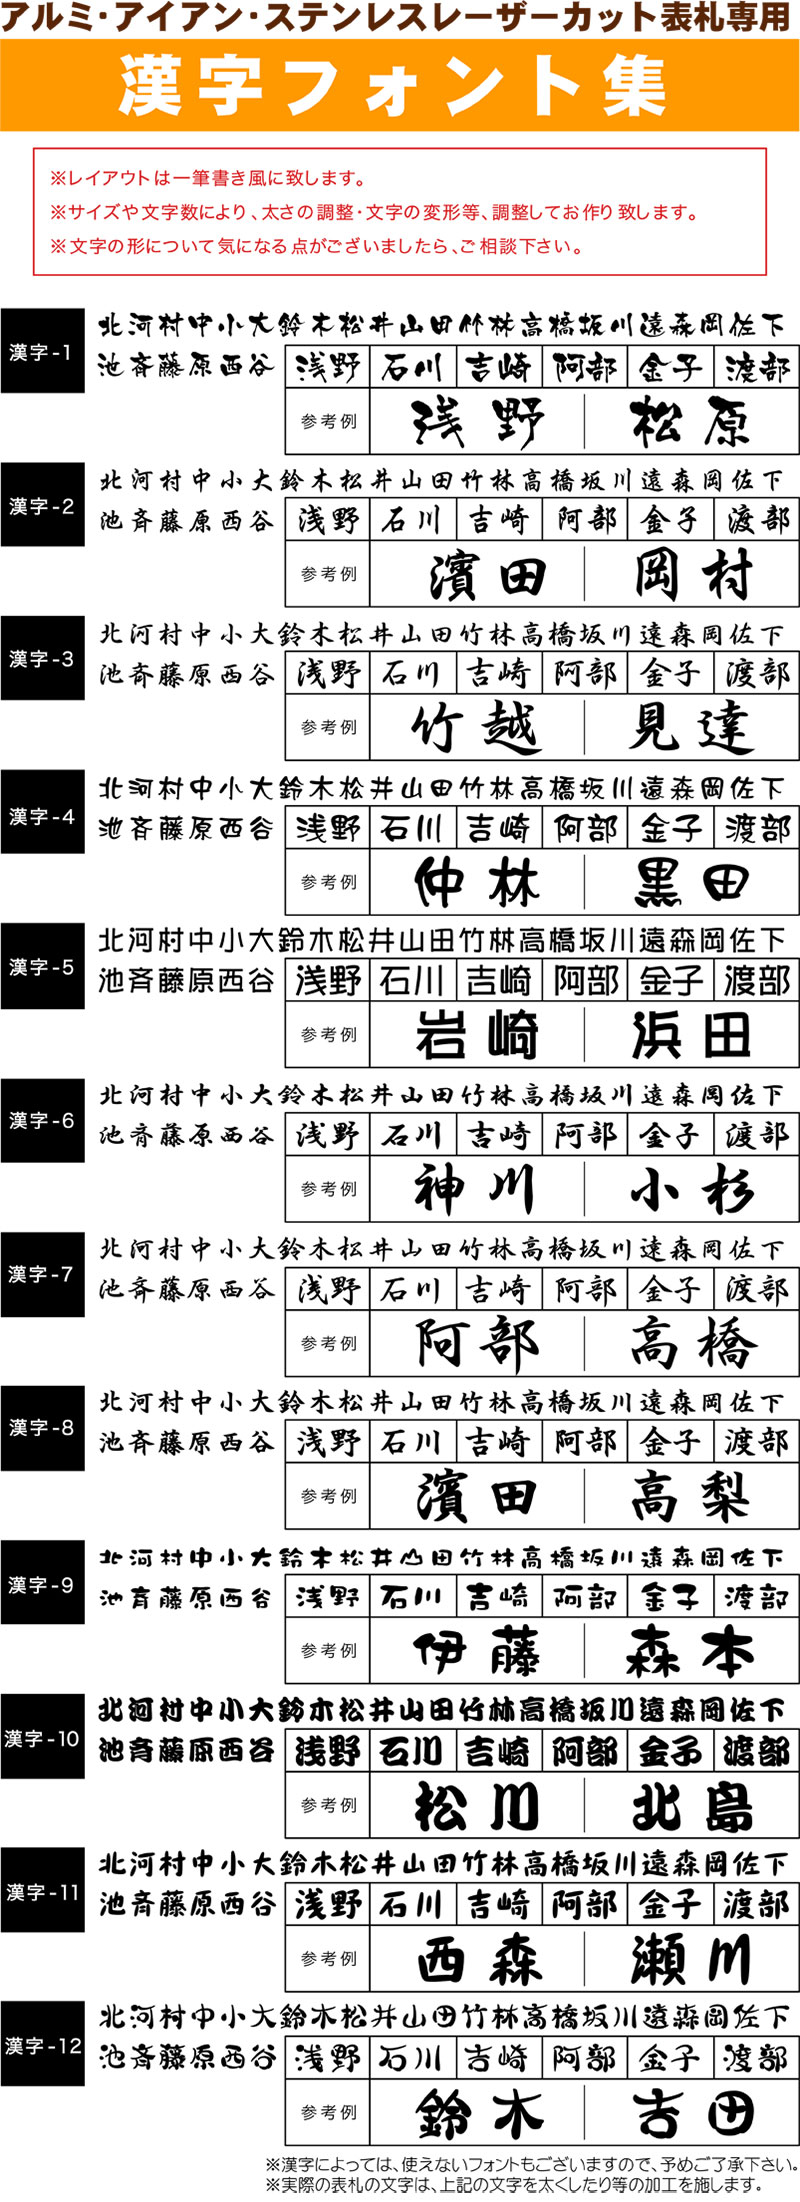 漢字フォント集